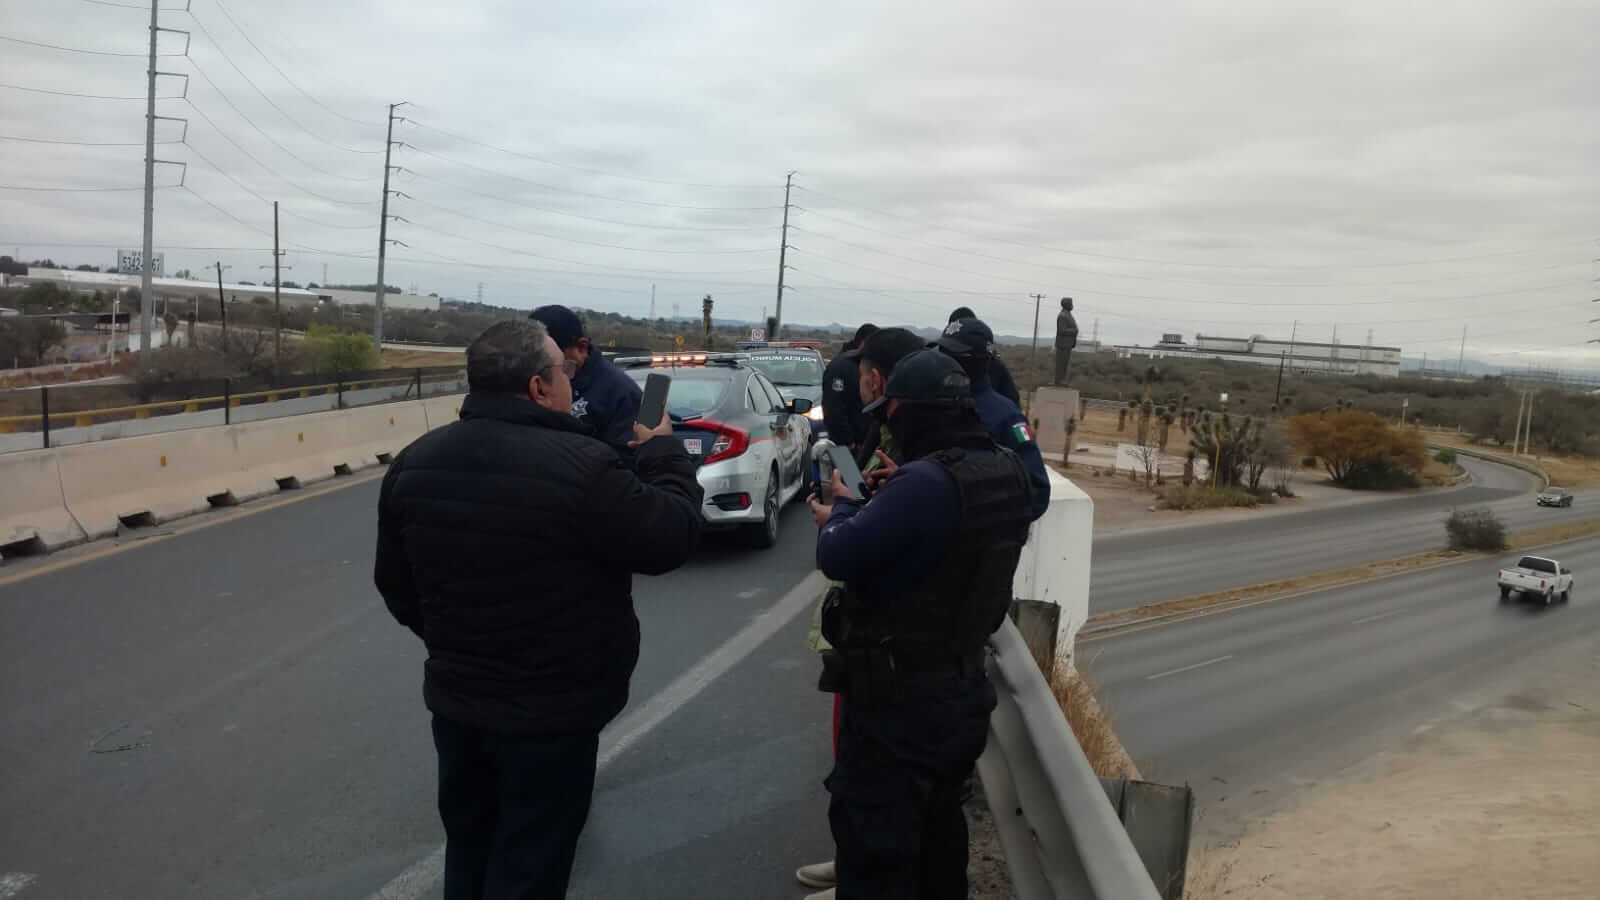 DGSPM de Soledad de Graciano Sánchez disuadieron un intento de suicidio de un  hombre en un puente de Carretera Matehuala.